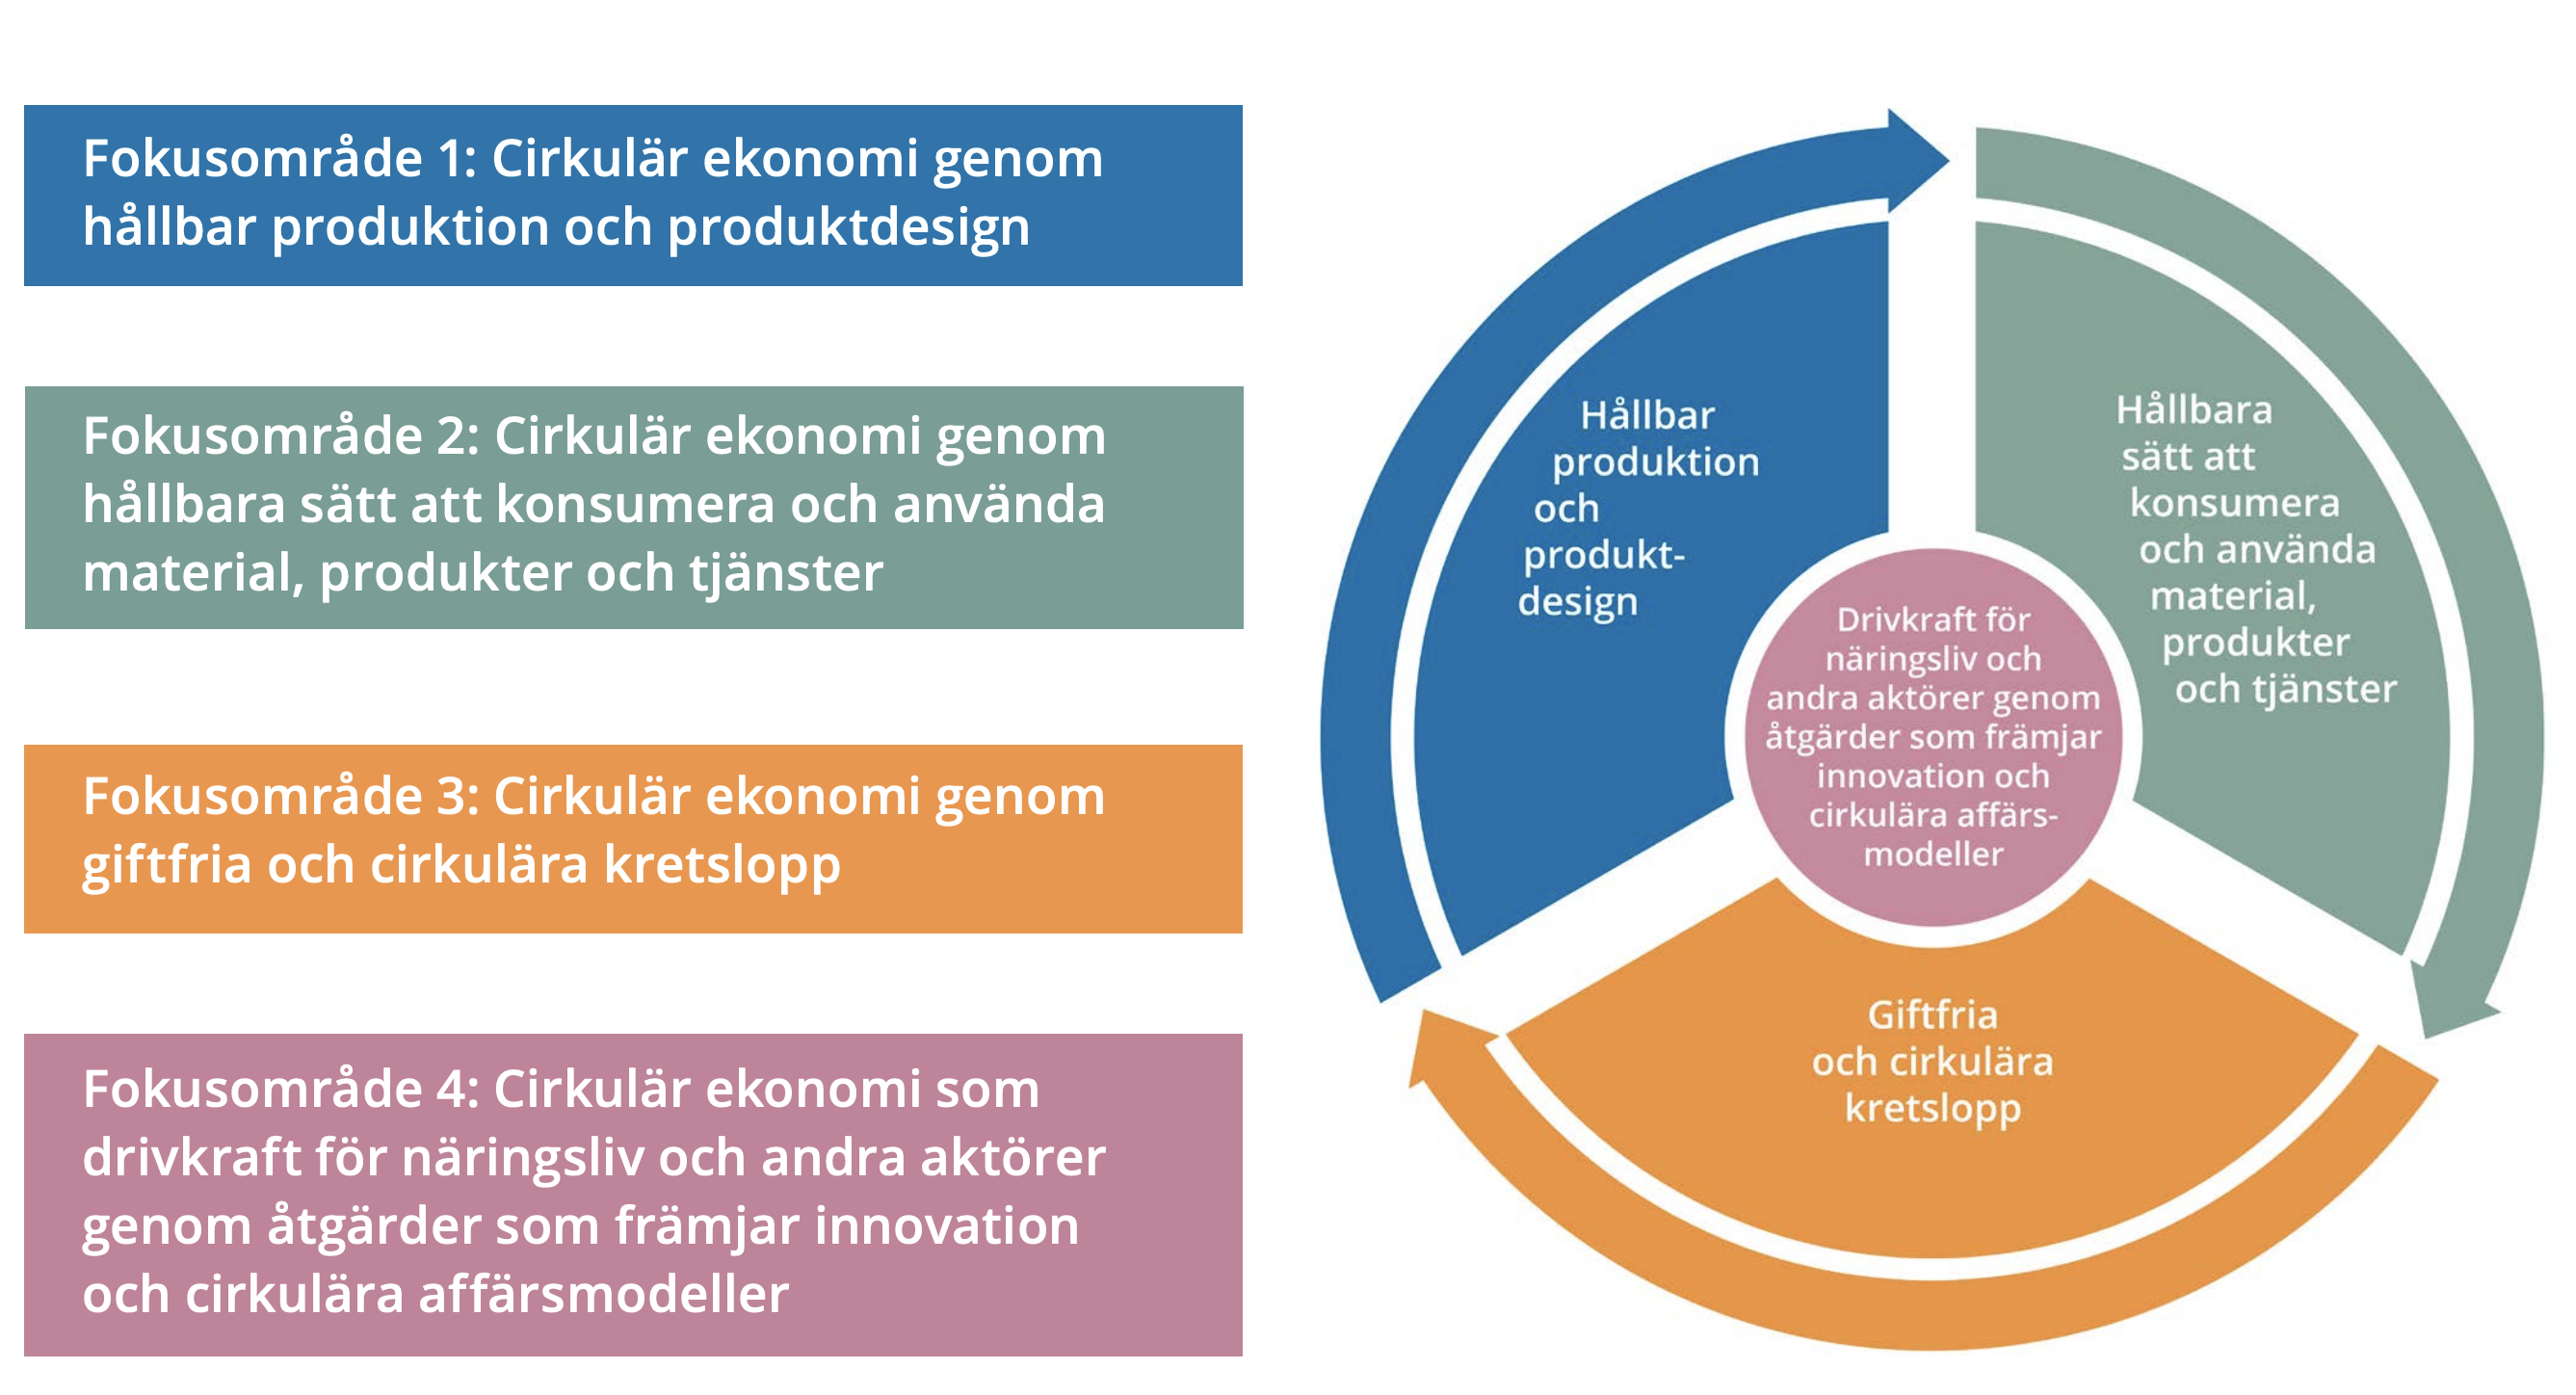 Sveriges strategi för cirkulär ekonomi